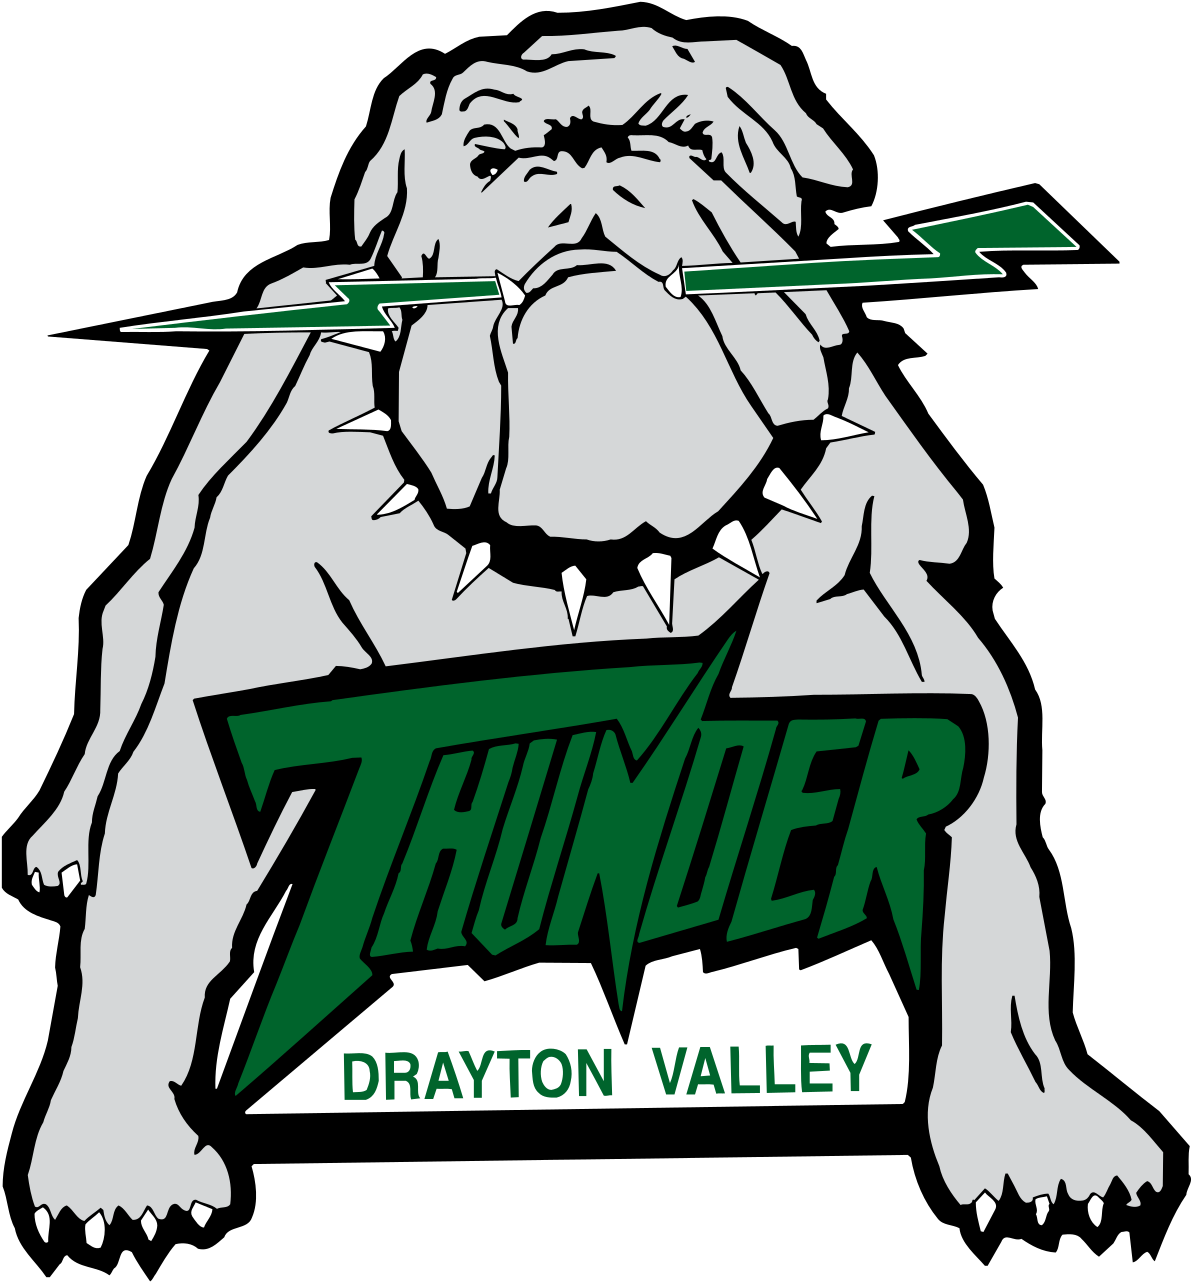 Drayton Valley Thunder Logo (1200x1297)